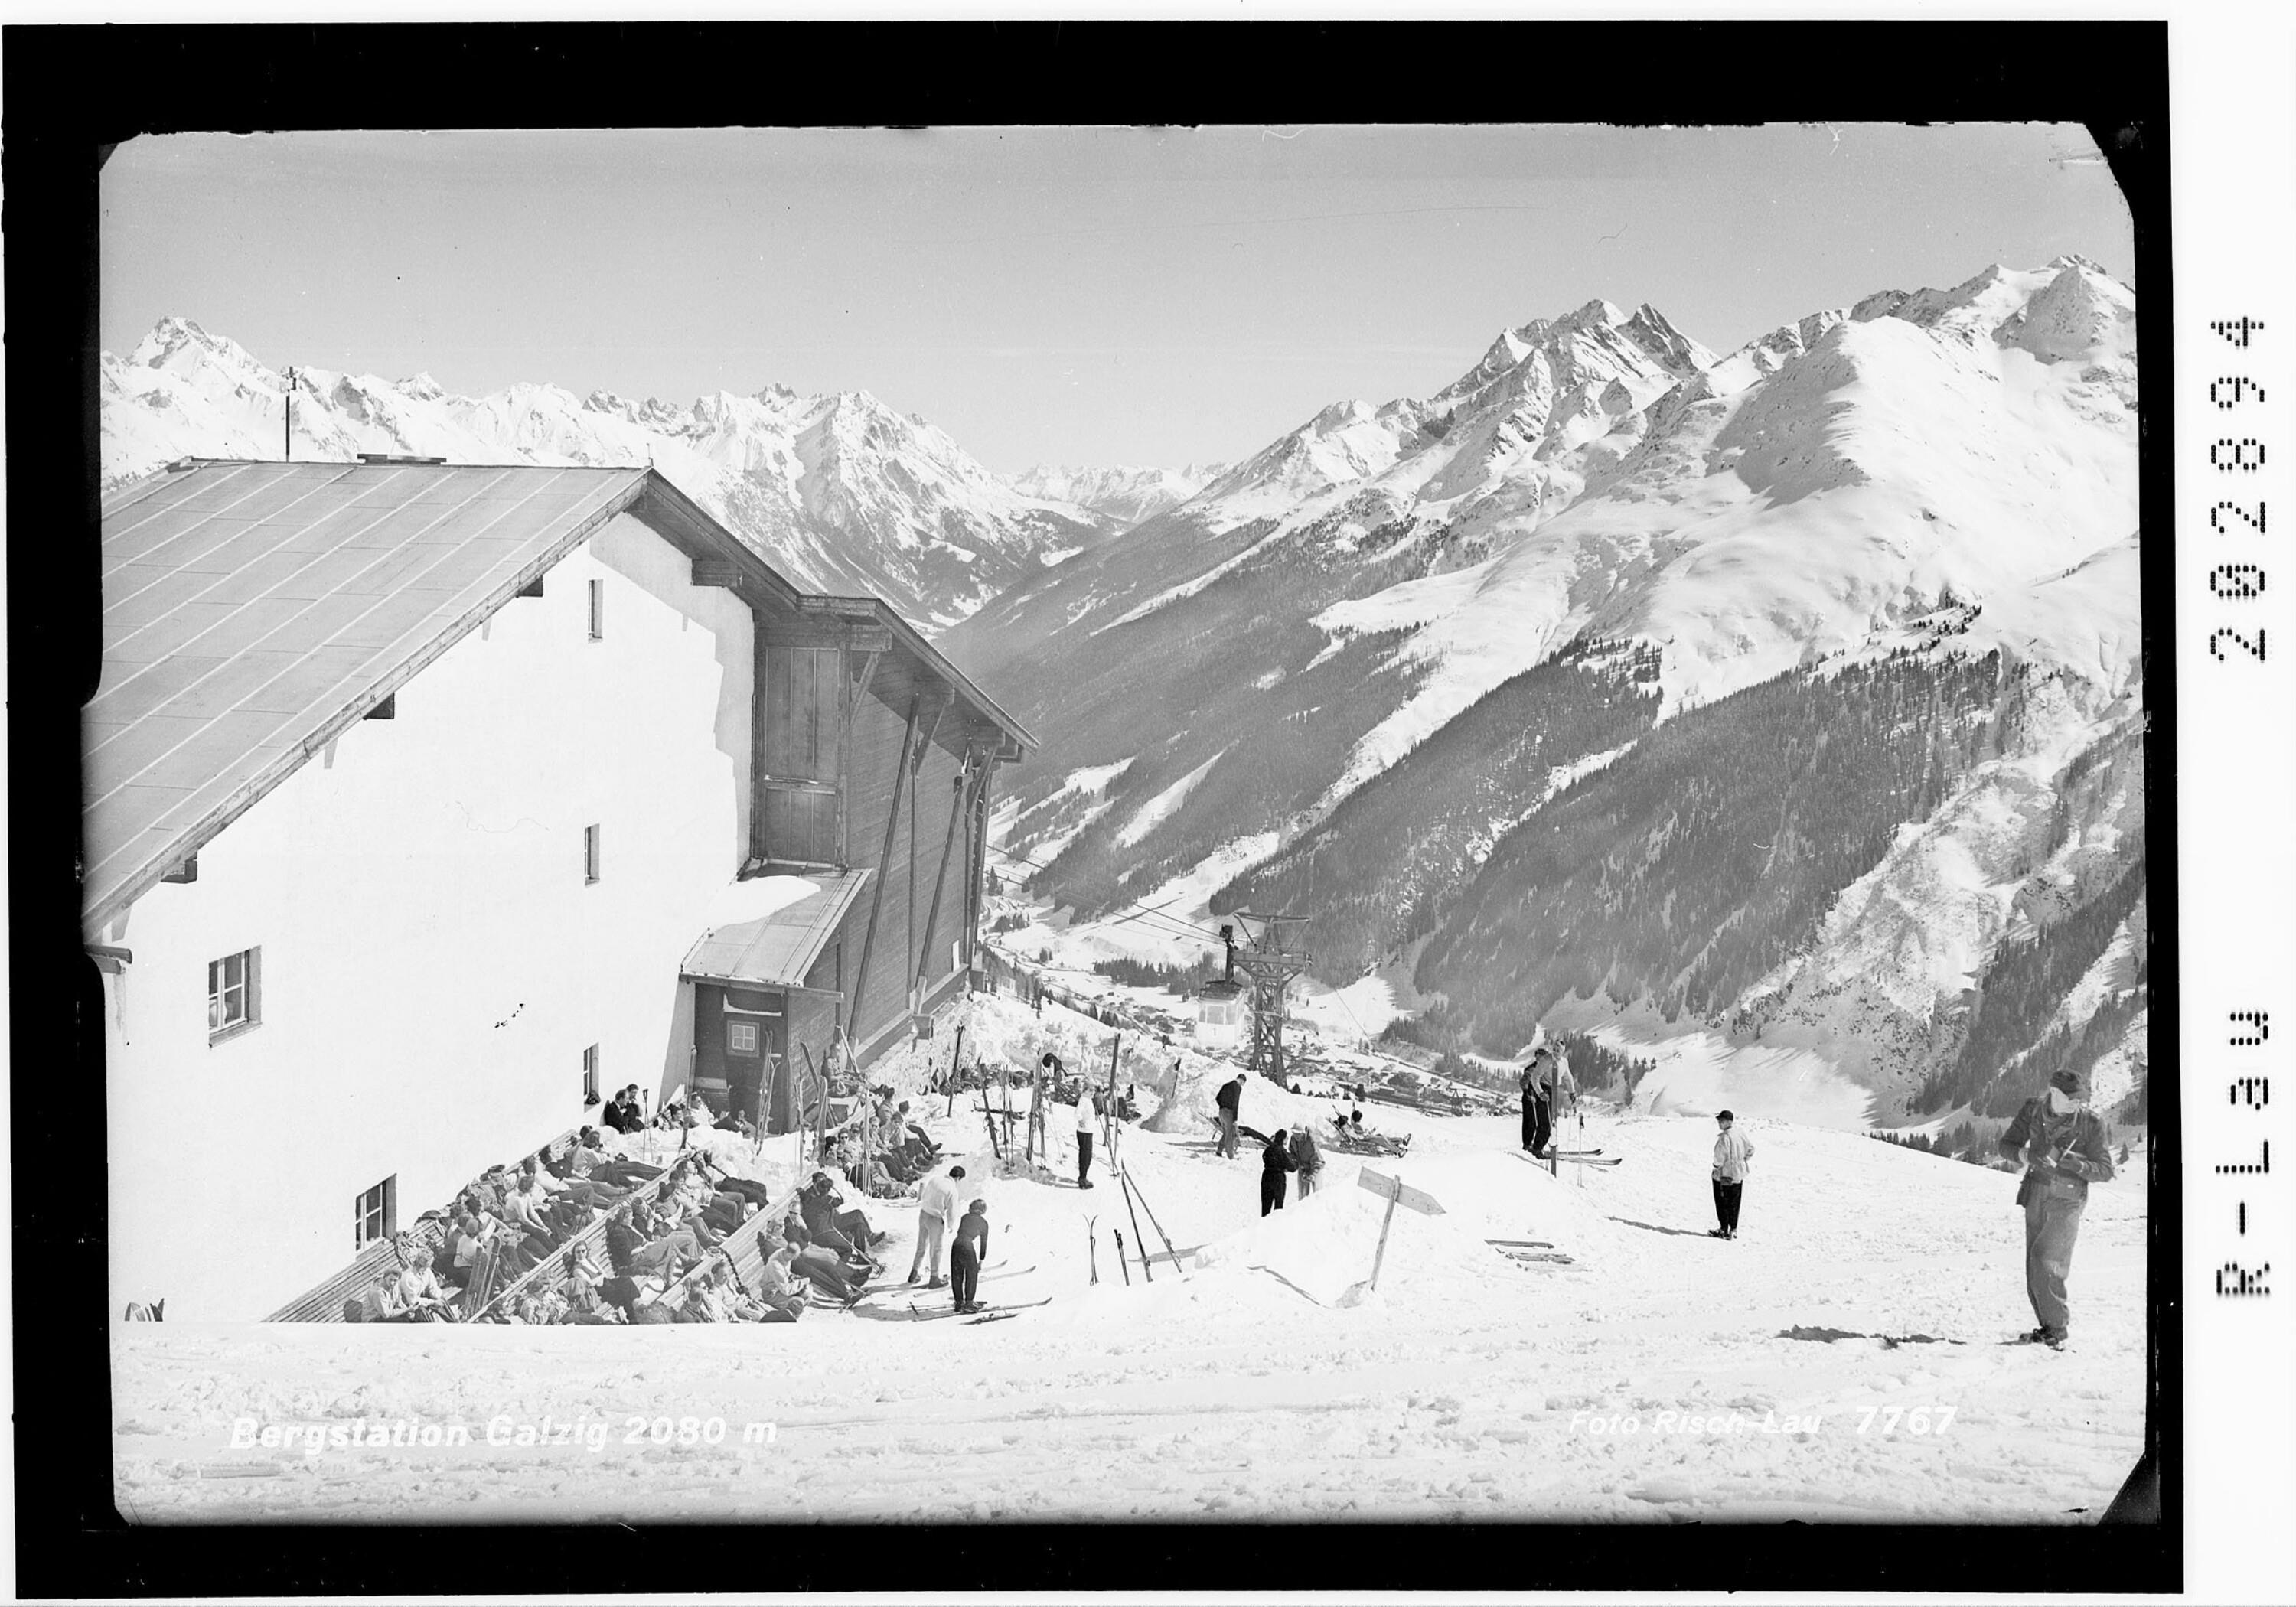 Bergstation Galzig 2080 m></div>


    <hr>
    <div class=